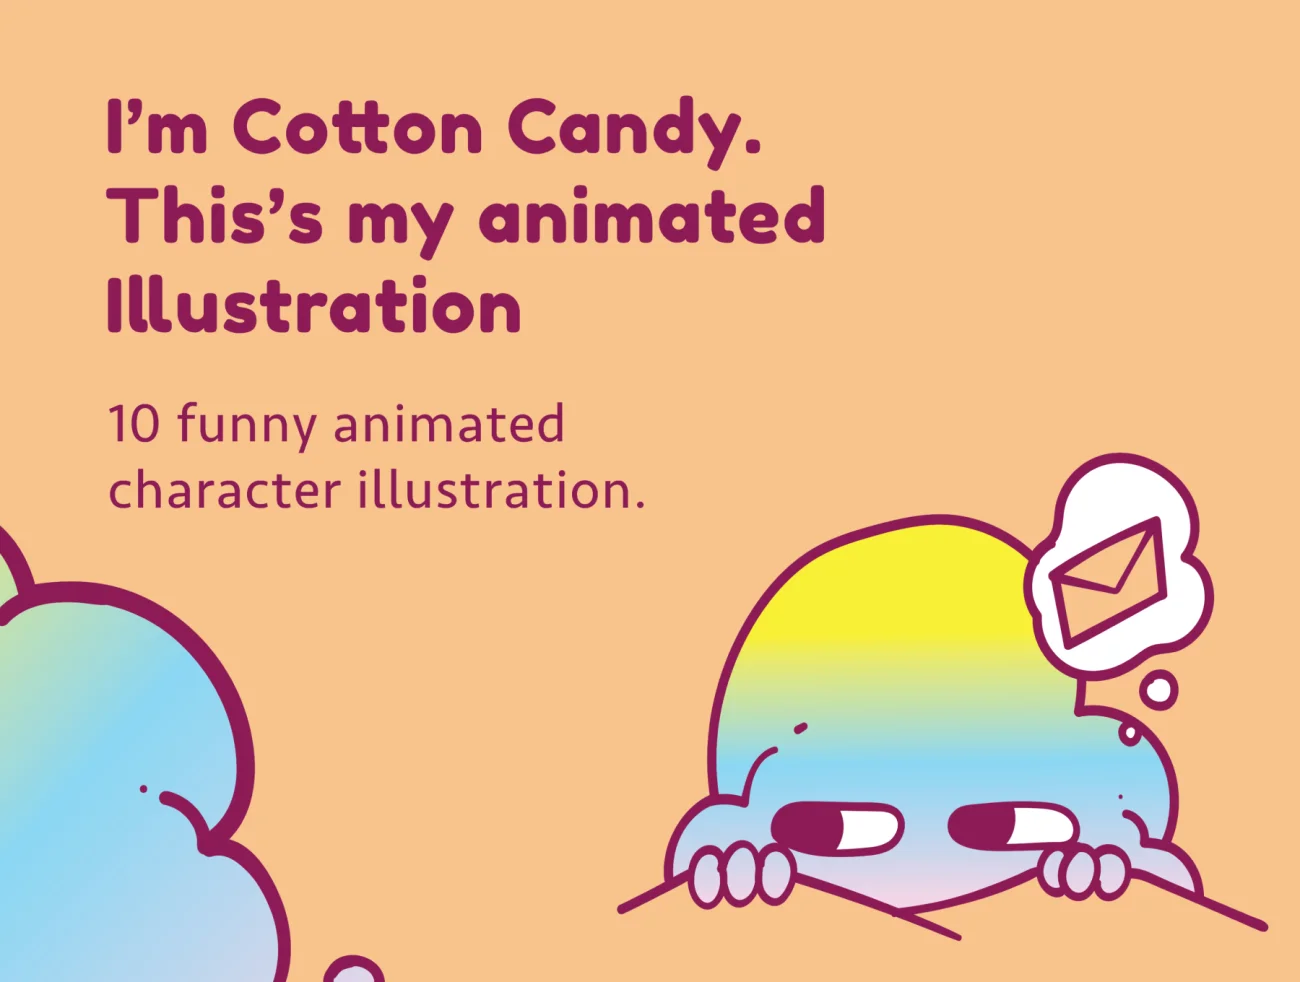 10款趣味搞怪动画卡通人物角色插图合集 Cotton Candy Animated Character Illustration插图1